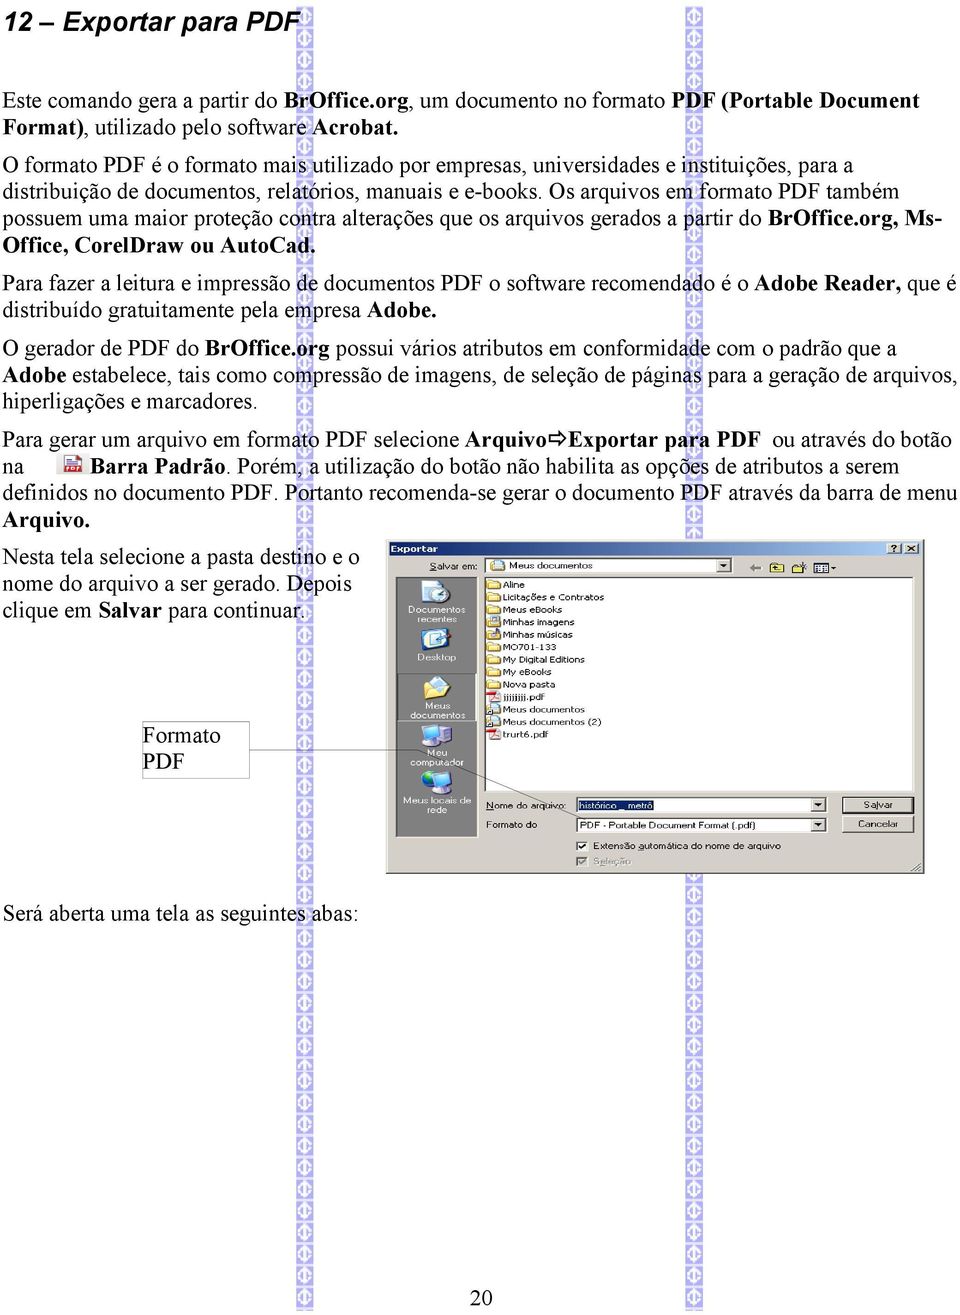 Os arquivos em formato PDF também possuem uma maior proteção contra alterações que os arquivos gerados a partir do BrOffice.org, MsOffice, CorelDraw ou AutoCad.